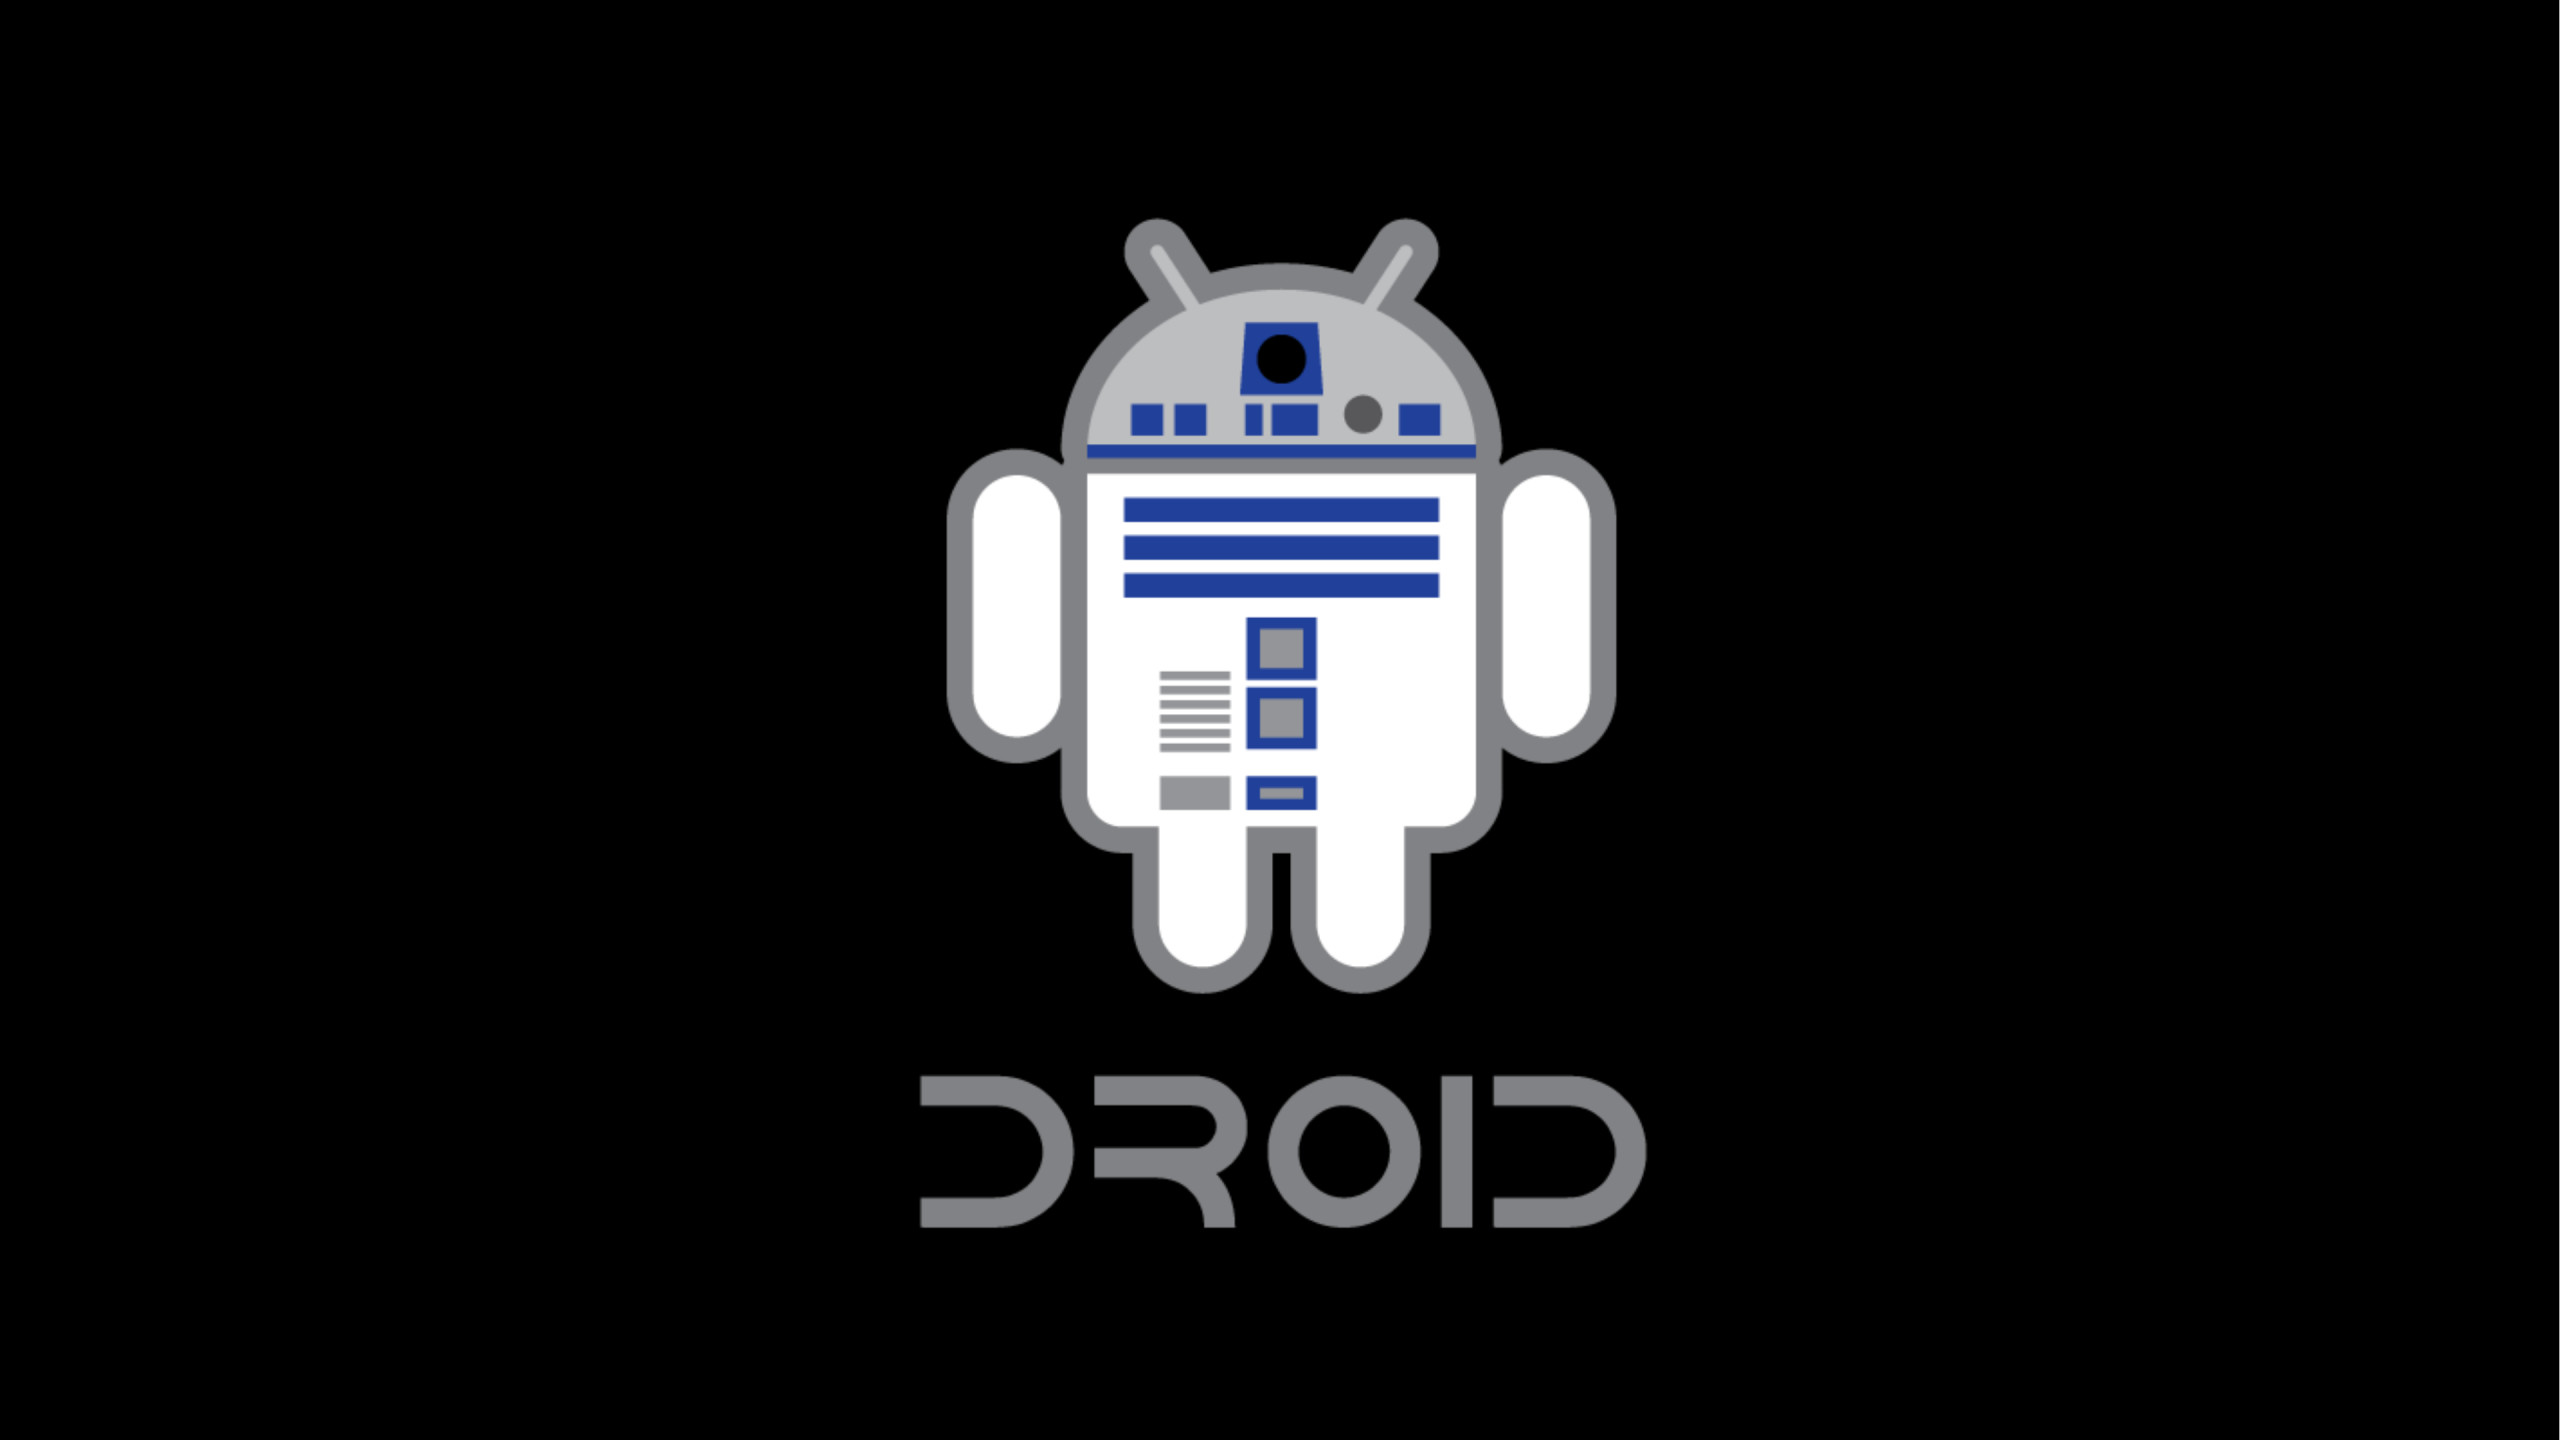 … Star-Wars-Android-Logo-4K-Wallpaper-2560×1440